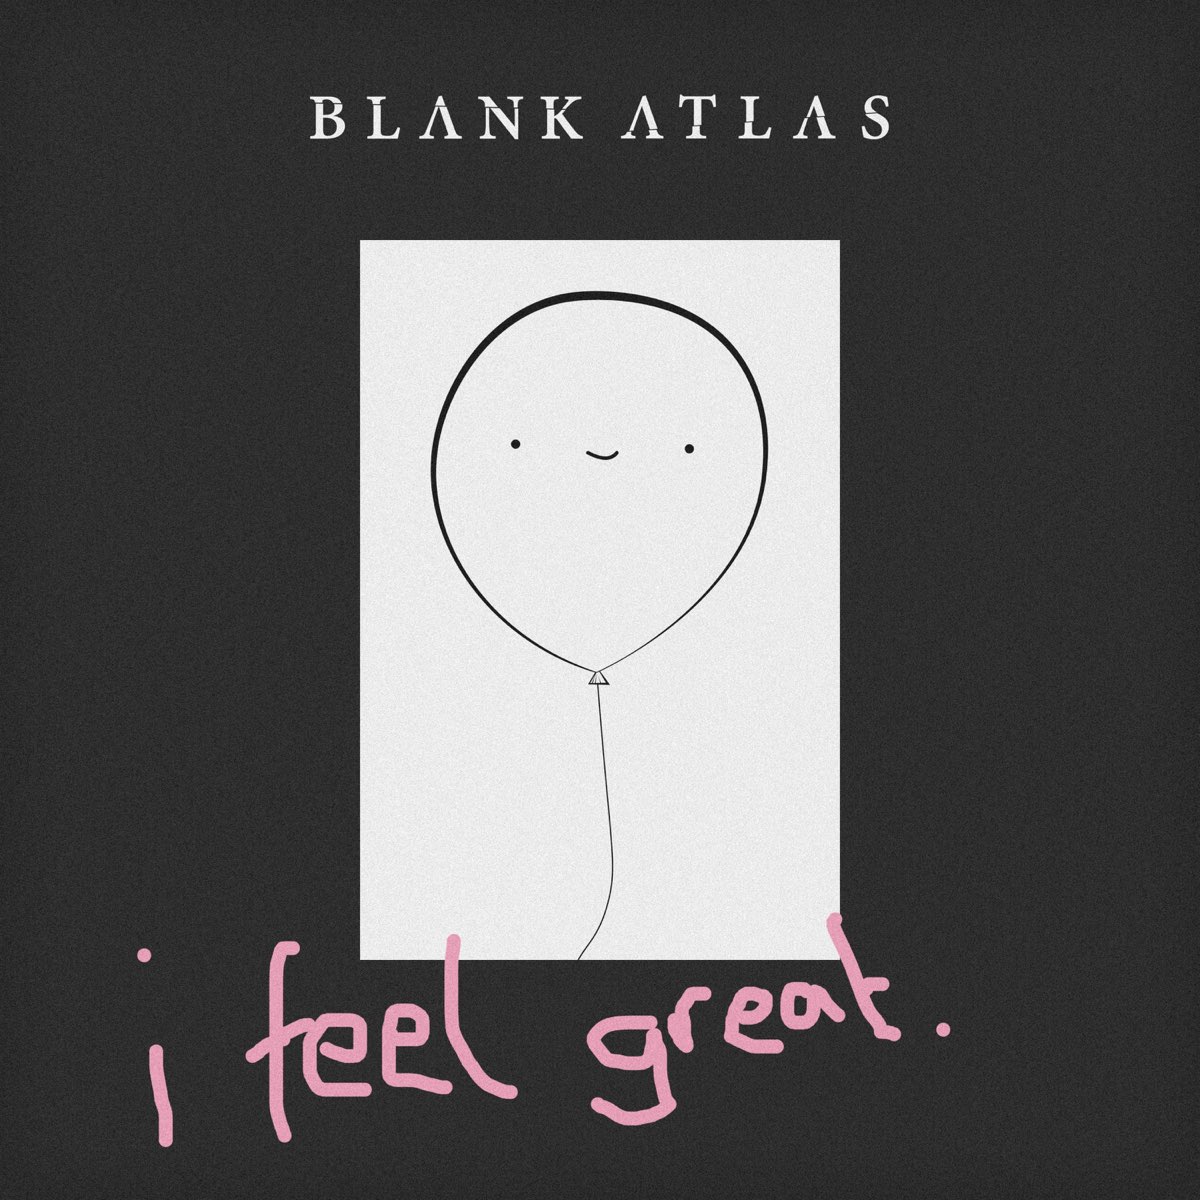 It made us feel. Blank Atlas. I feel great.